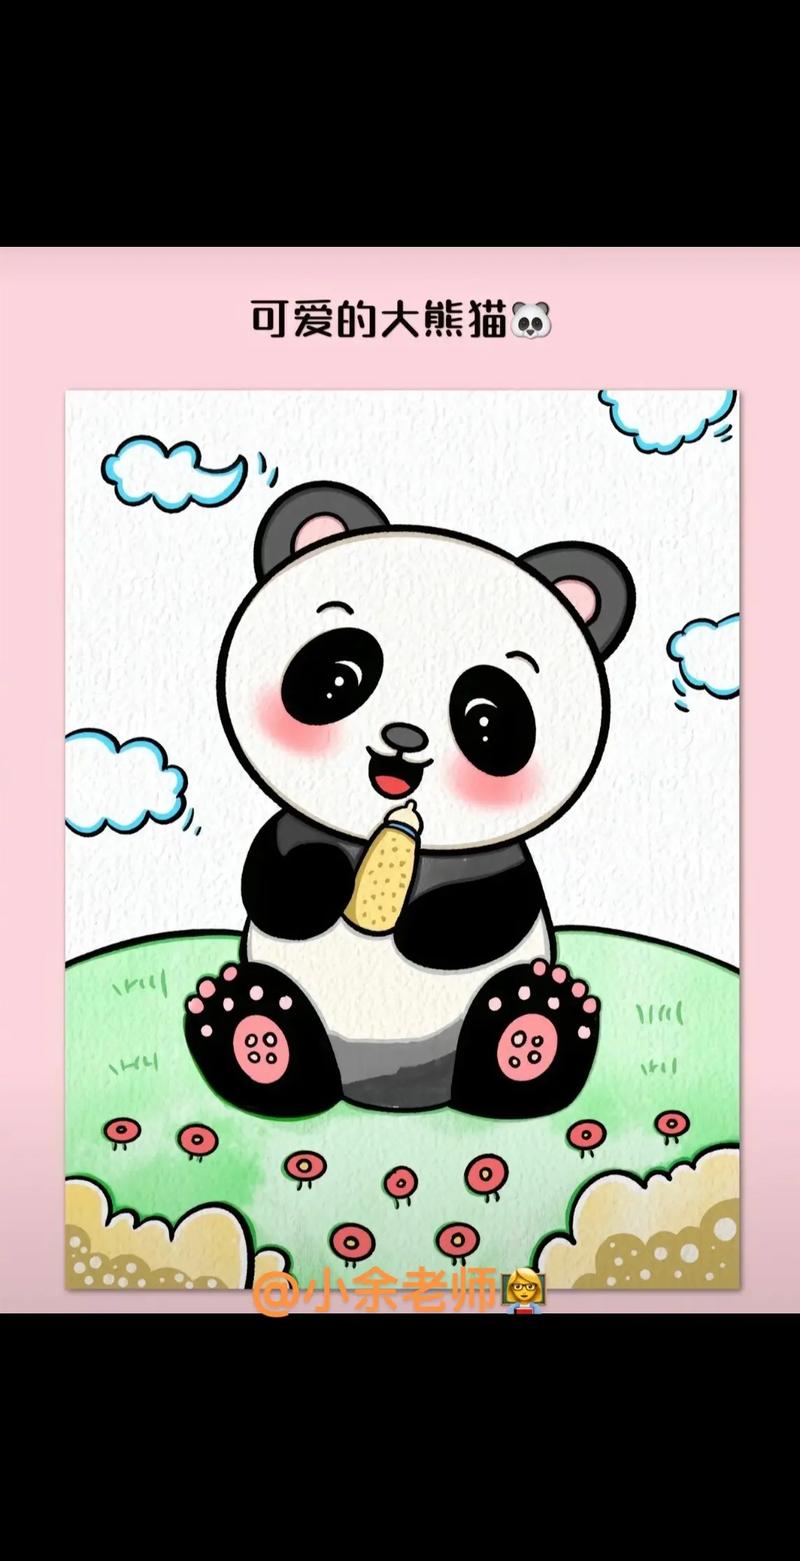 可爱的大熊猫94.#一学就会的简笔画 #幼儿园创意美术 #亲 - 抖音